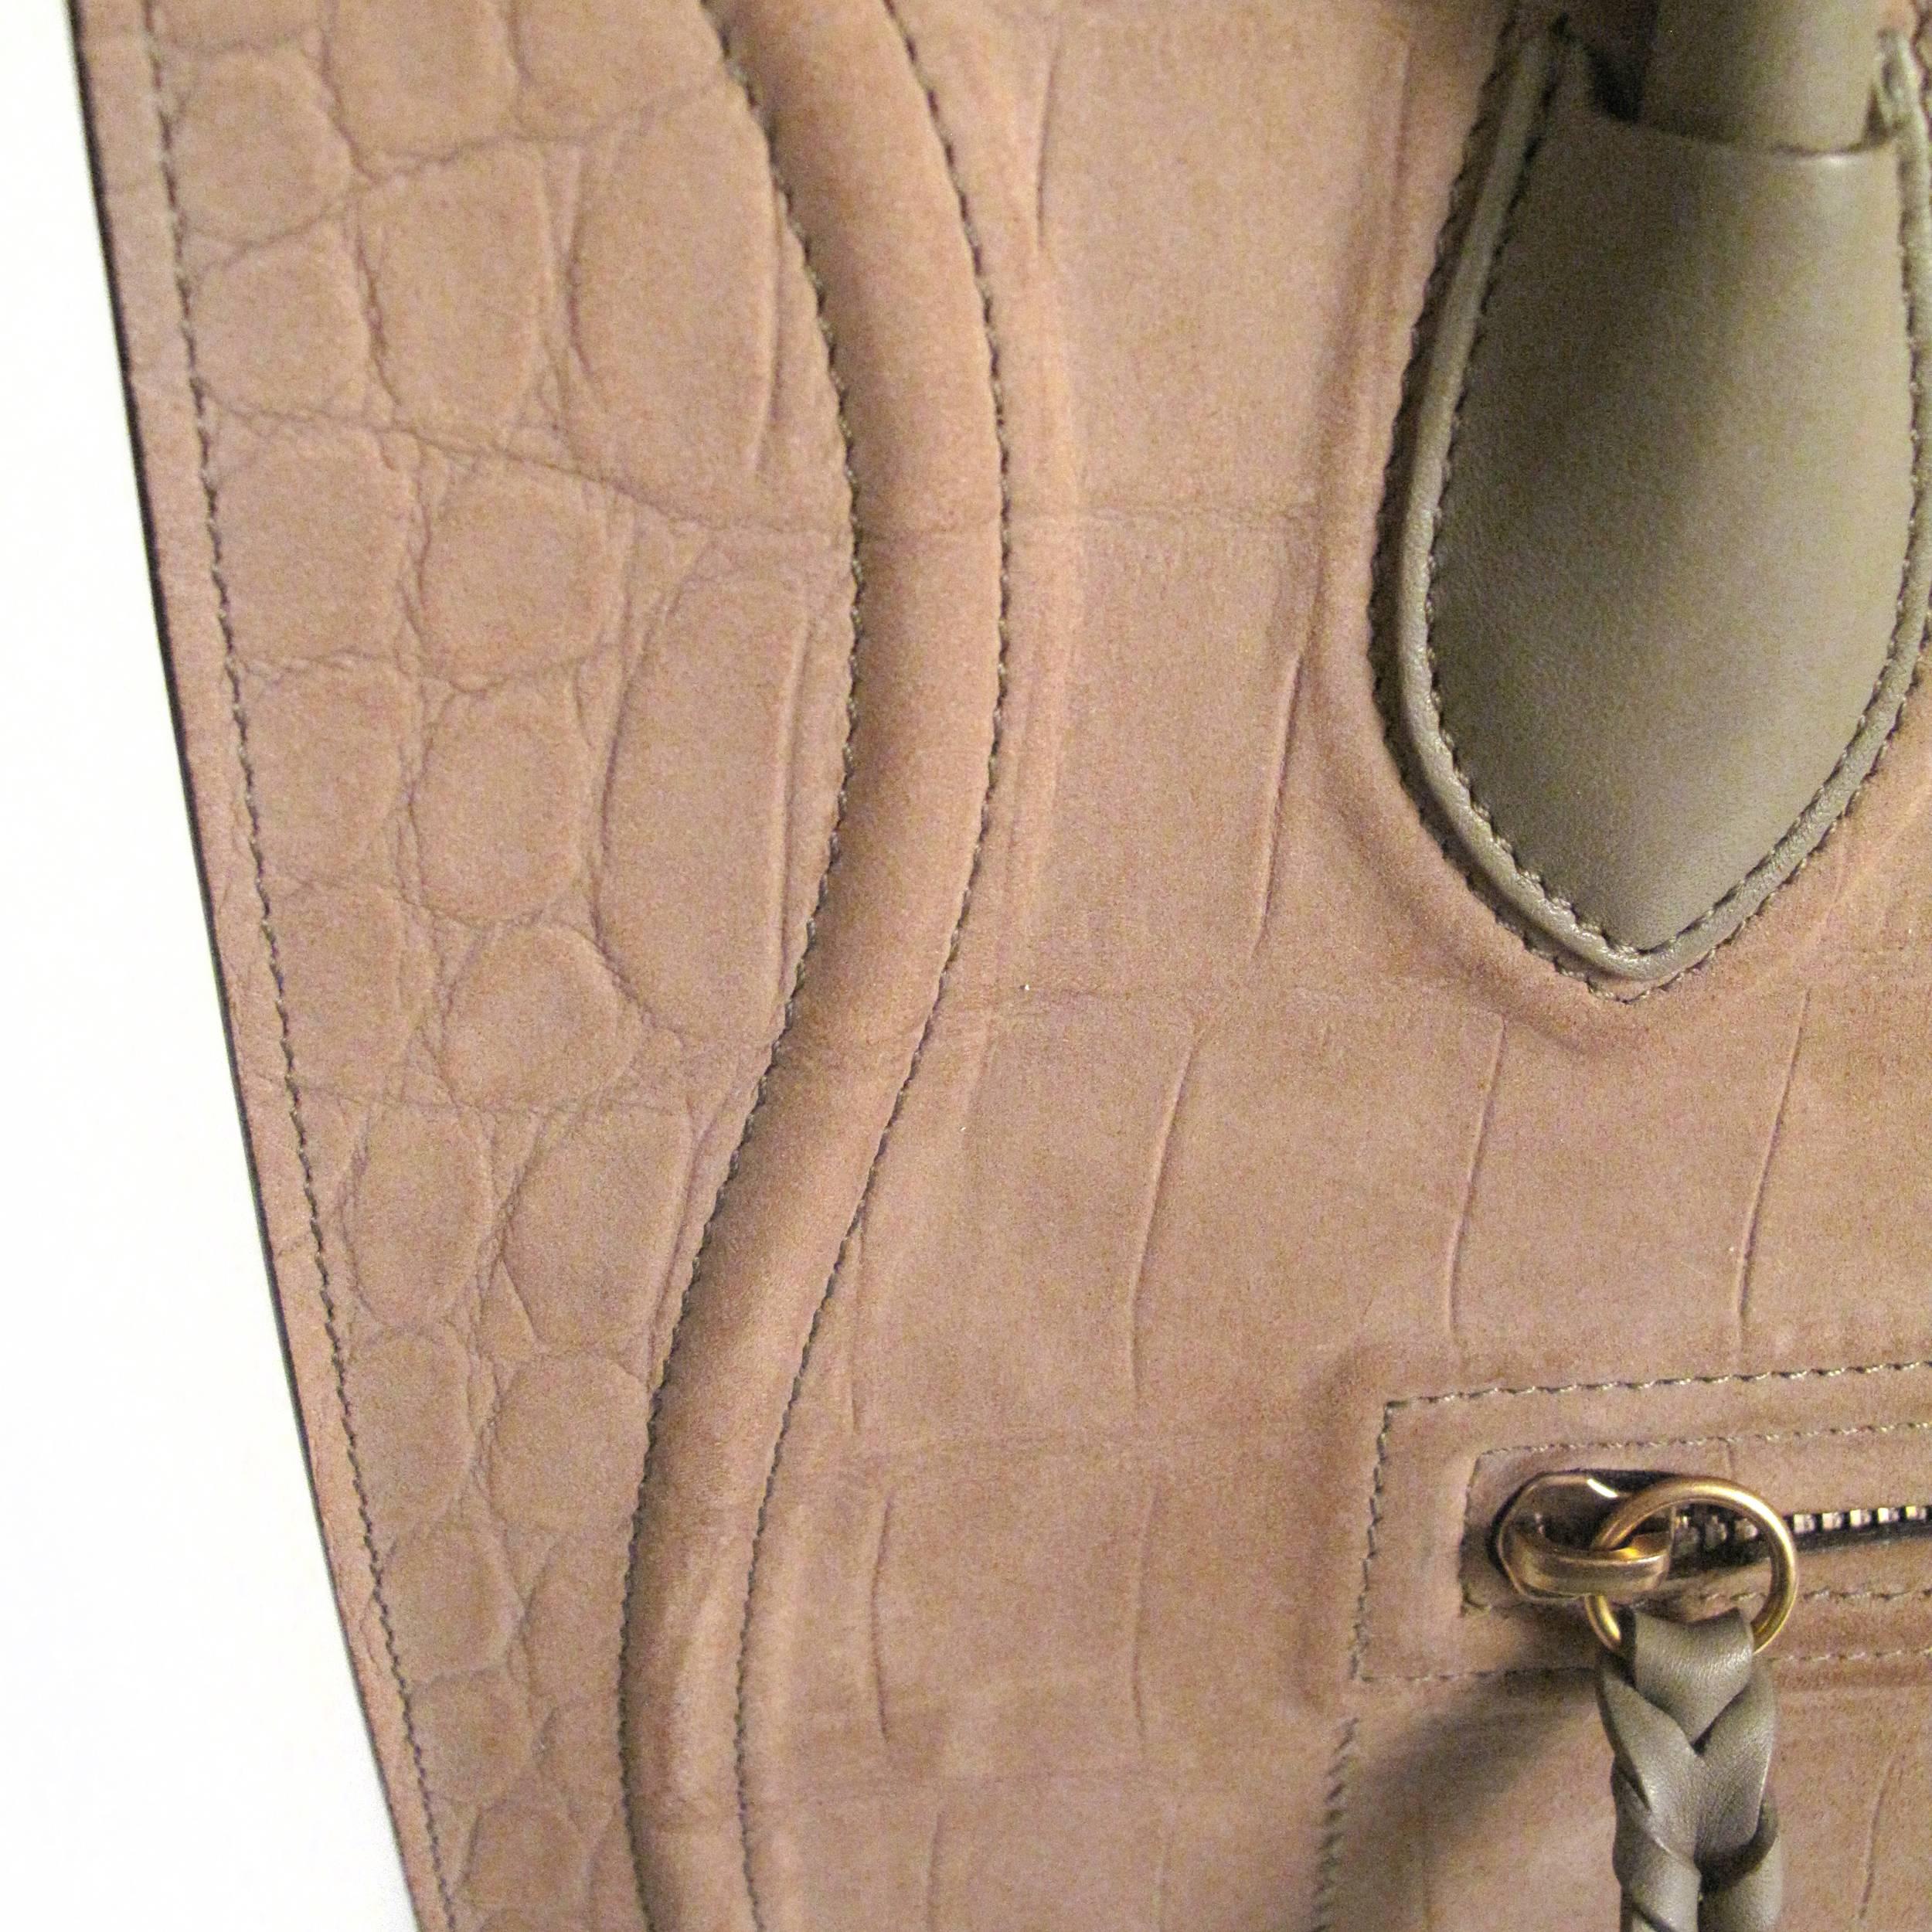 Brown Celine Phantom Bag - Tan Suede Leather Embossed Crocodile Luggage Tote Handbag